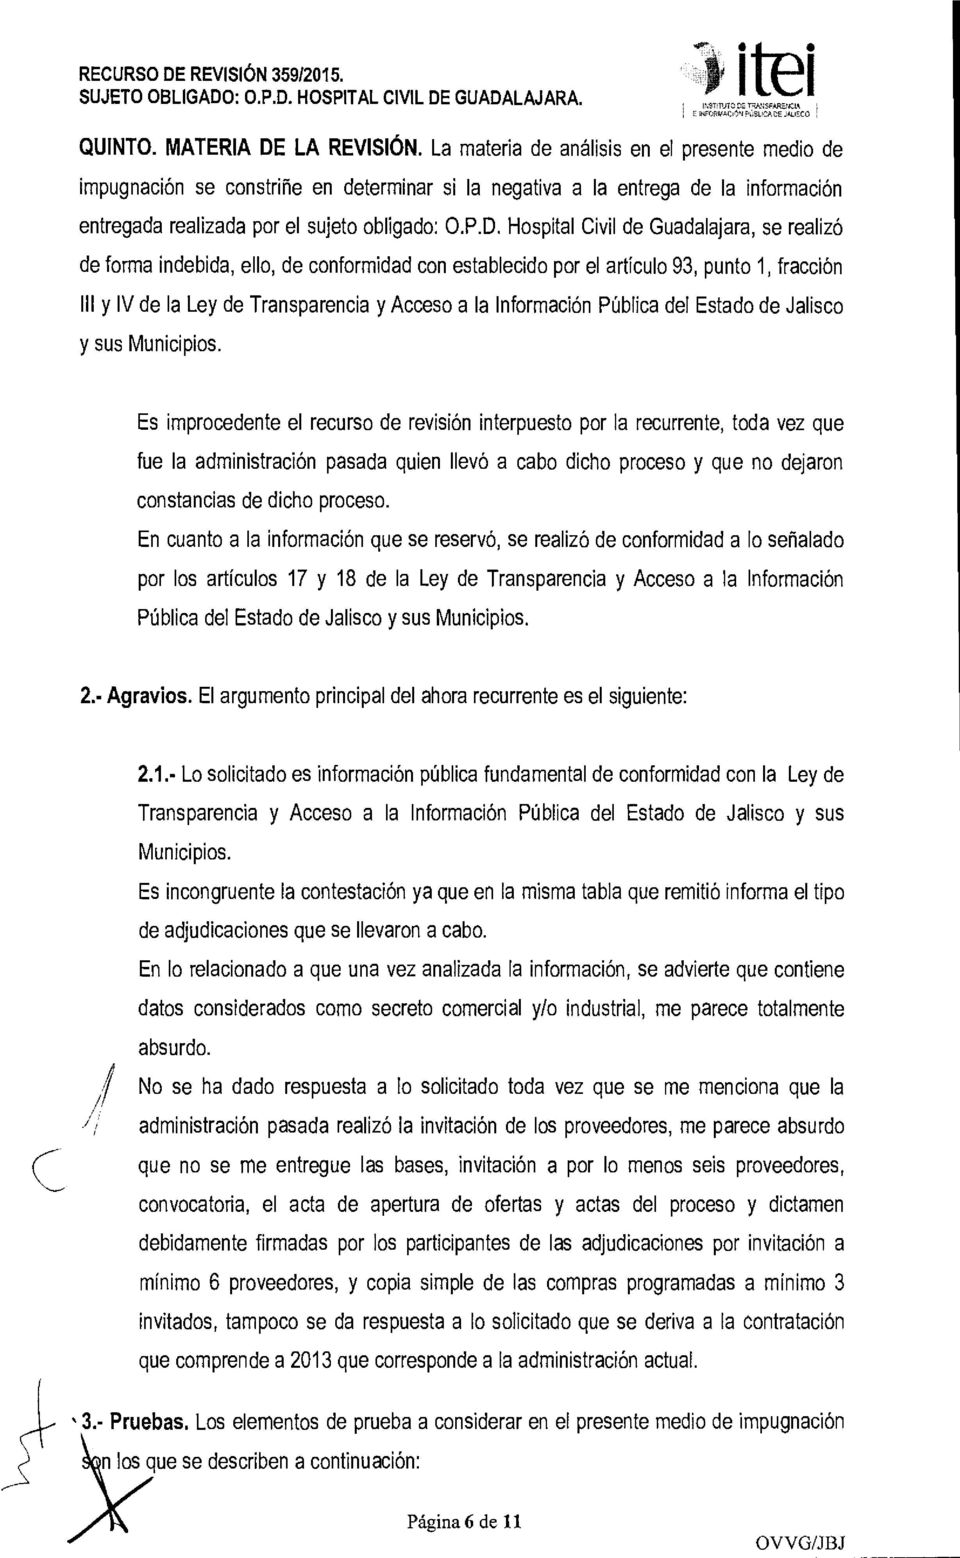 Hospital Civil de Guadalajara, se realizó de forma indebida, ello, de conformidad con establecido por el artículo 93, punto 1, fracción 111 y V de la Ley de Transparencia y Acceso a la nformación